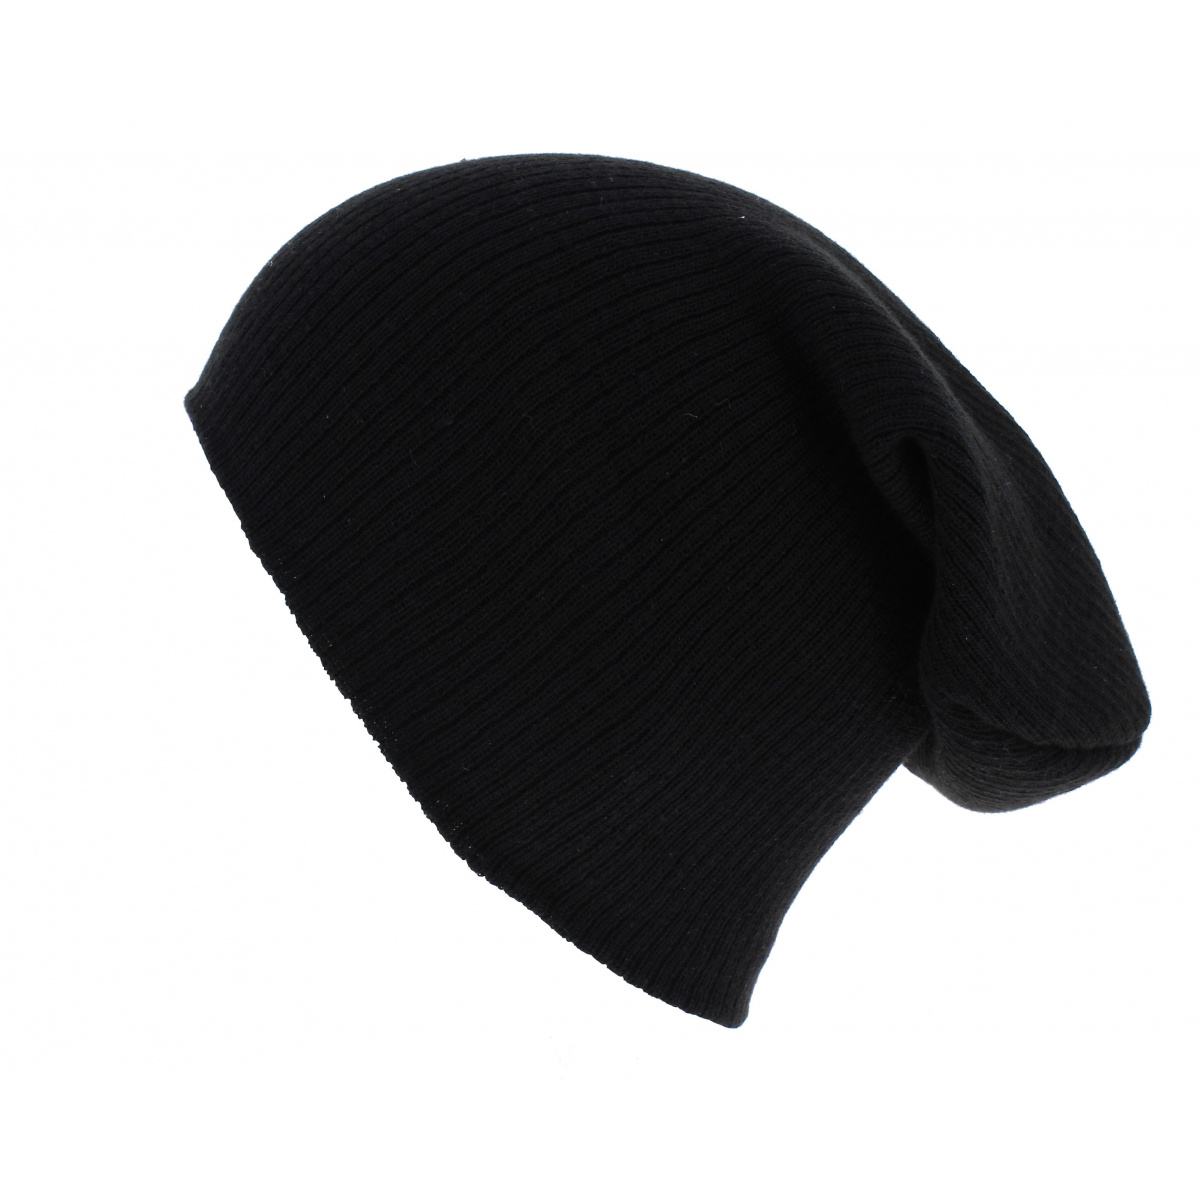 Bonnet marin noir en coton épais brossé Serie-Graffic